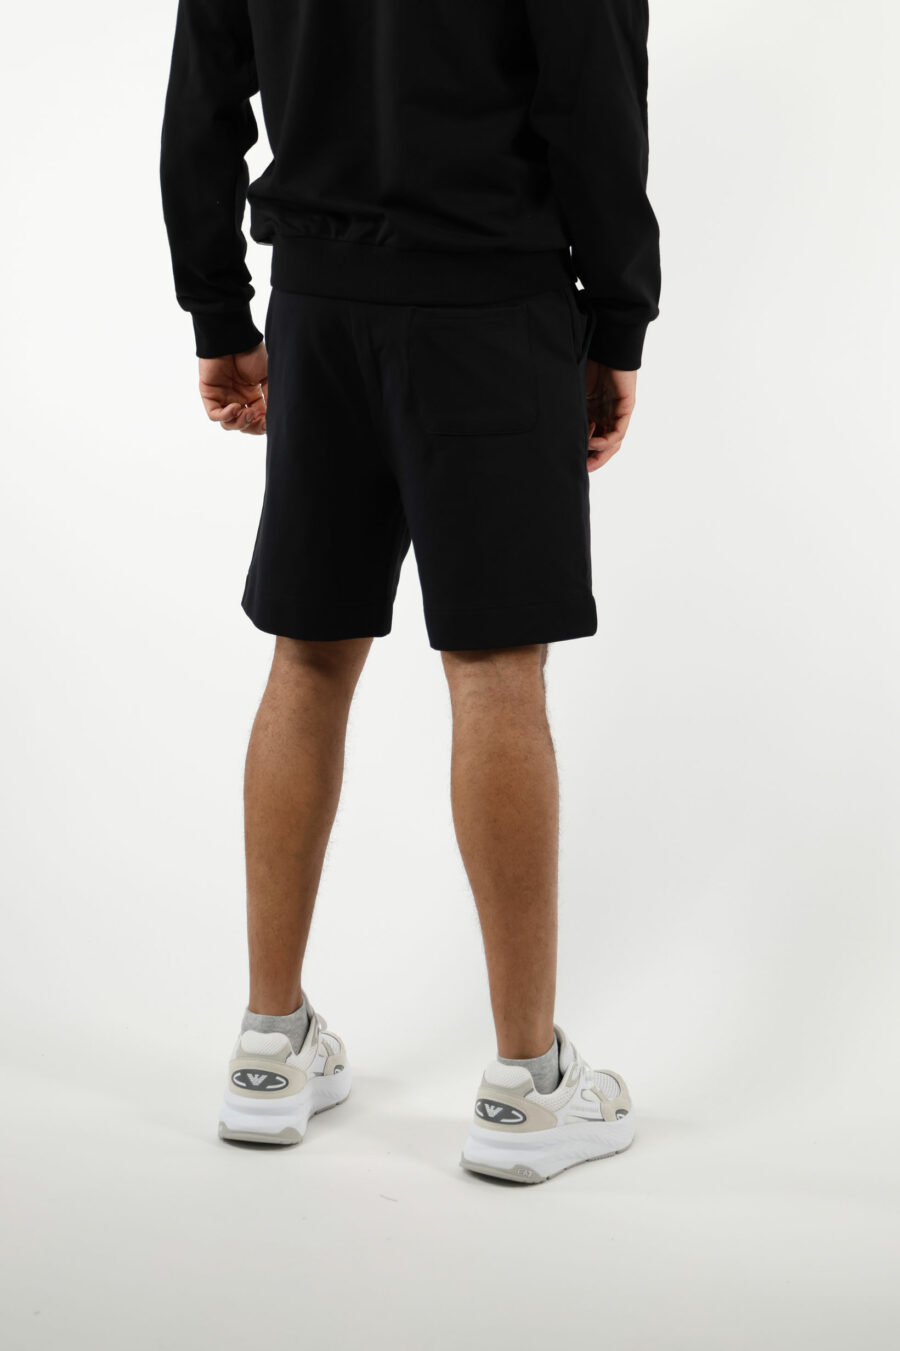 Pantalón de chándal corto negro con minilogo oso "underbear" en goma negro - 111064